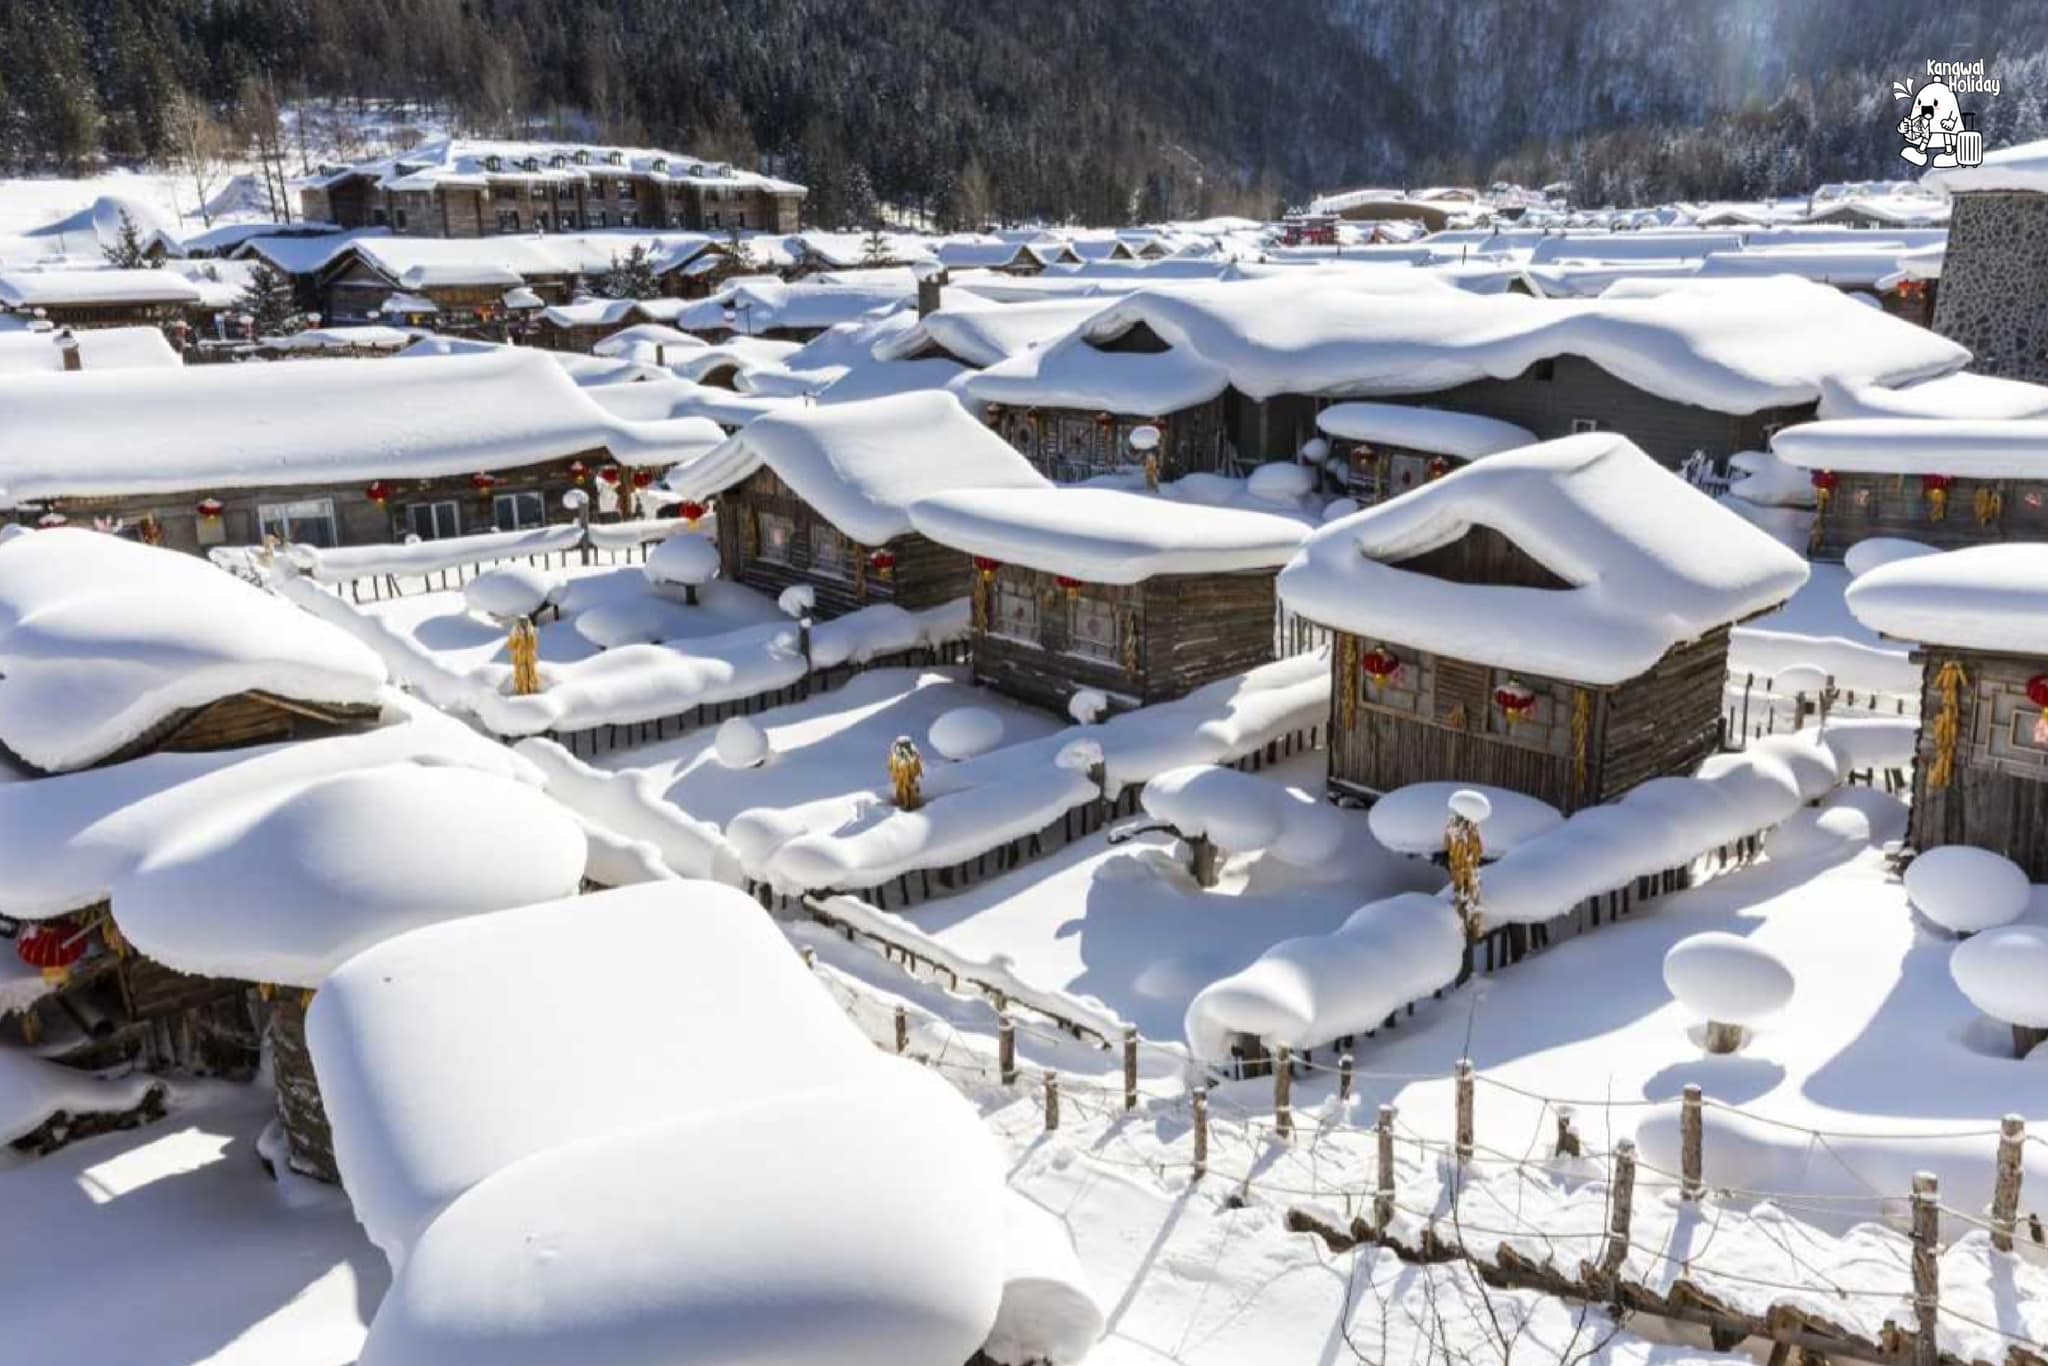 หมู่บ้านหิมะ China Snow Town, ทัวร์ฮาร์บิน,เมืองฮาร์บิน,หมู่บ้านหิมะ,ทัวร์จีน